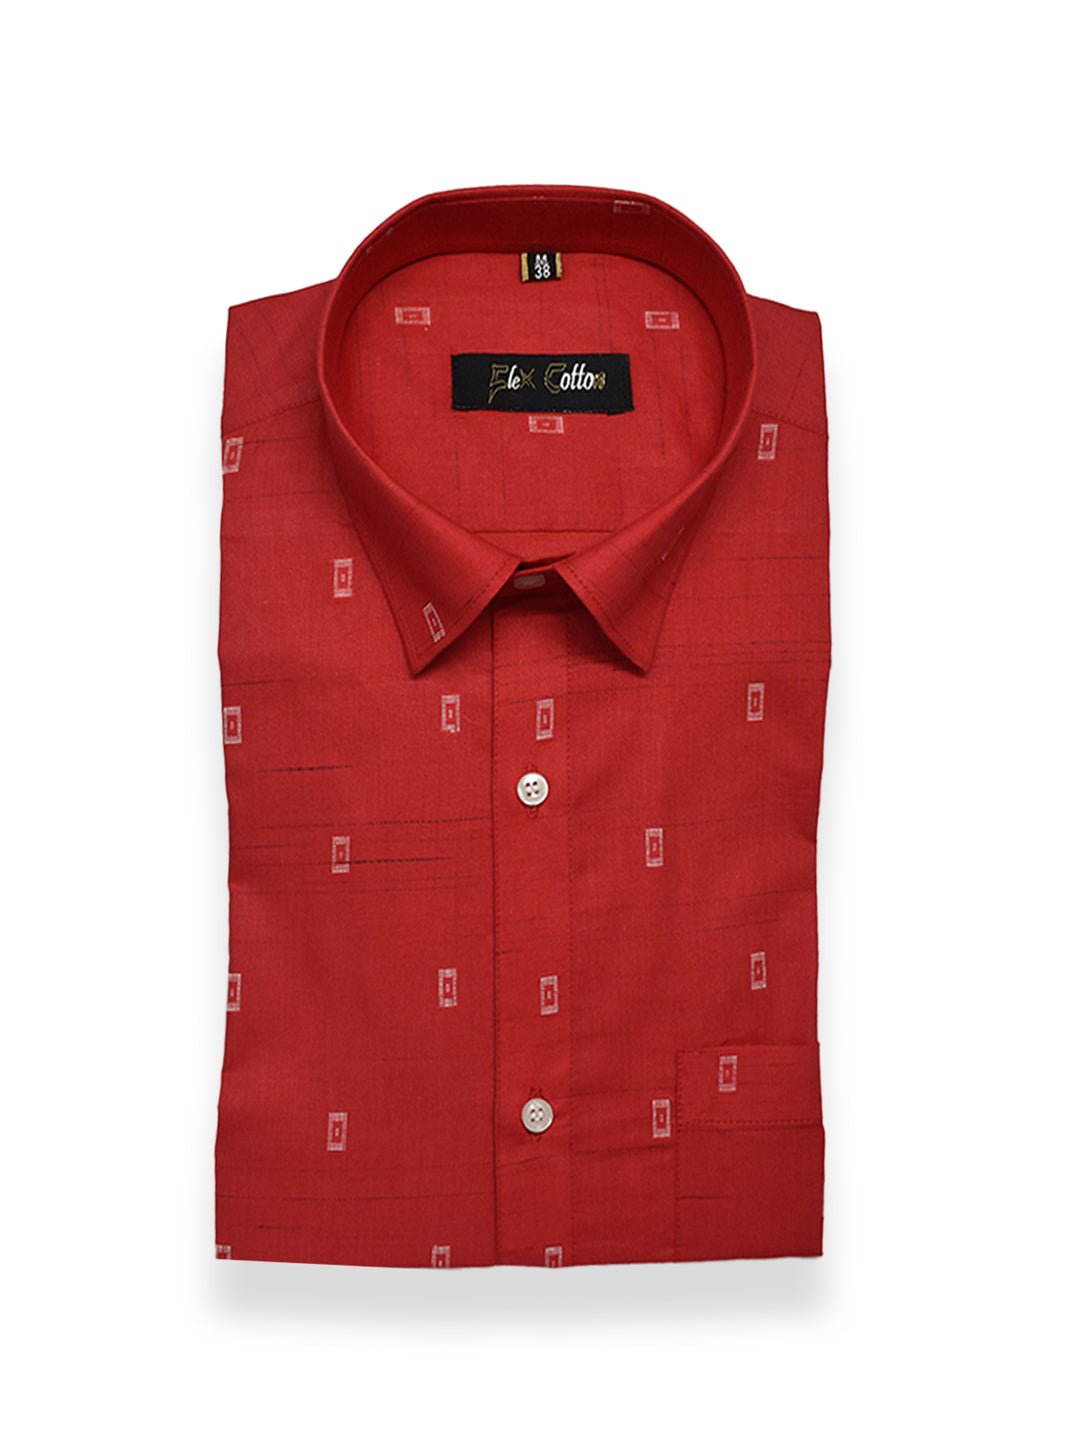 Red Color Cotton Butta Shirts For Men's - Punekar Cotton